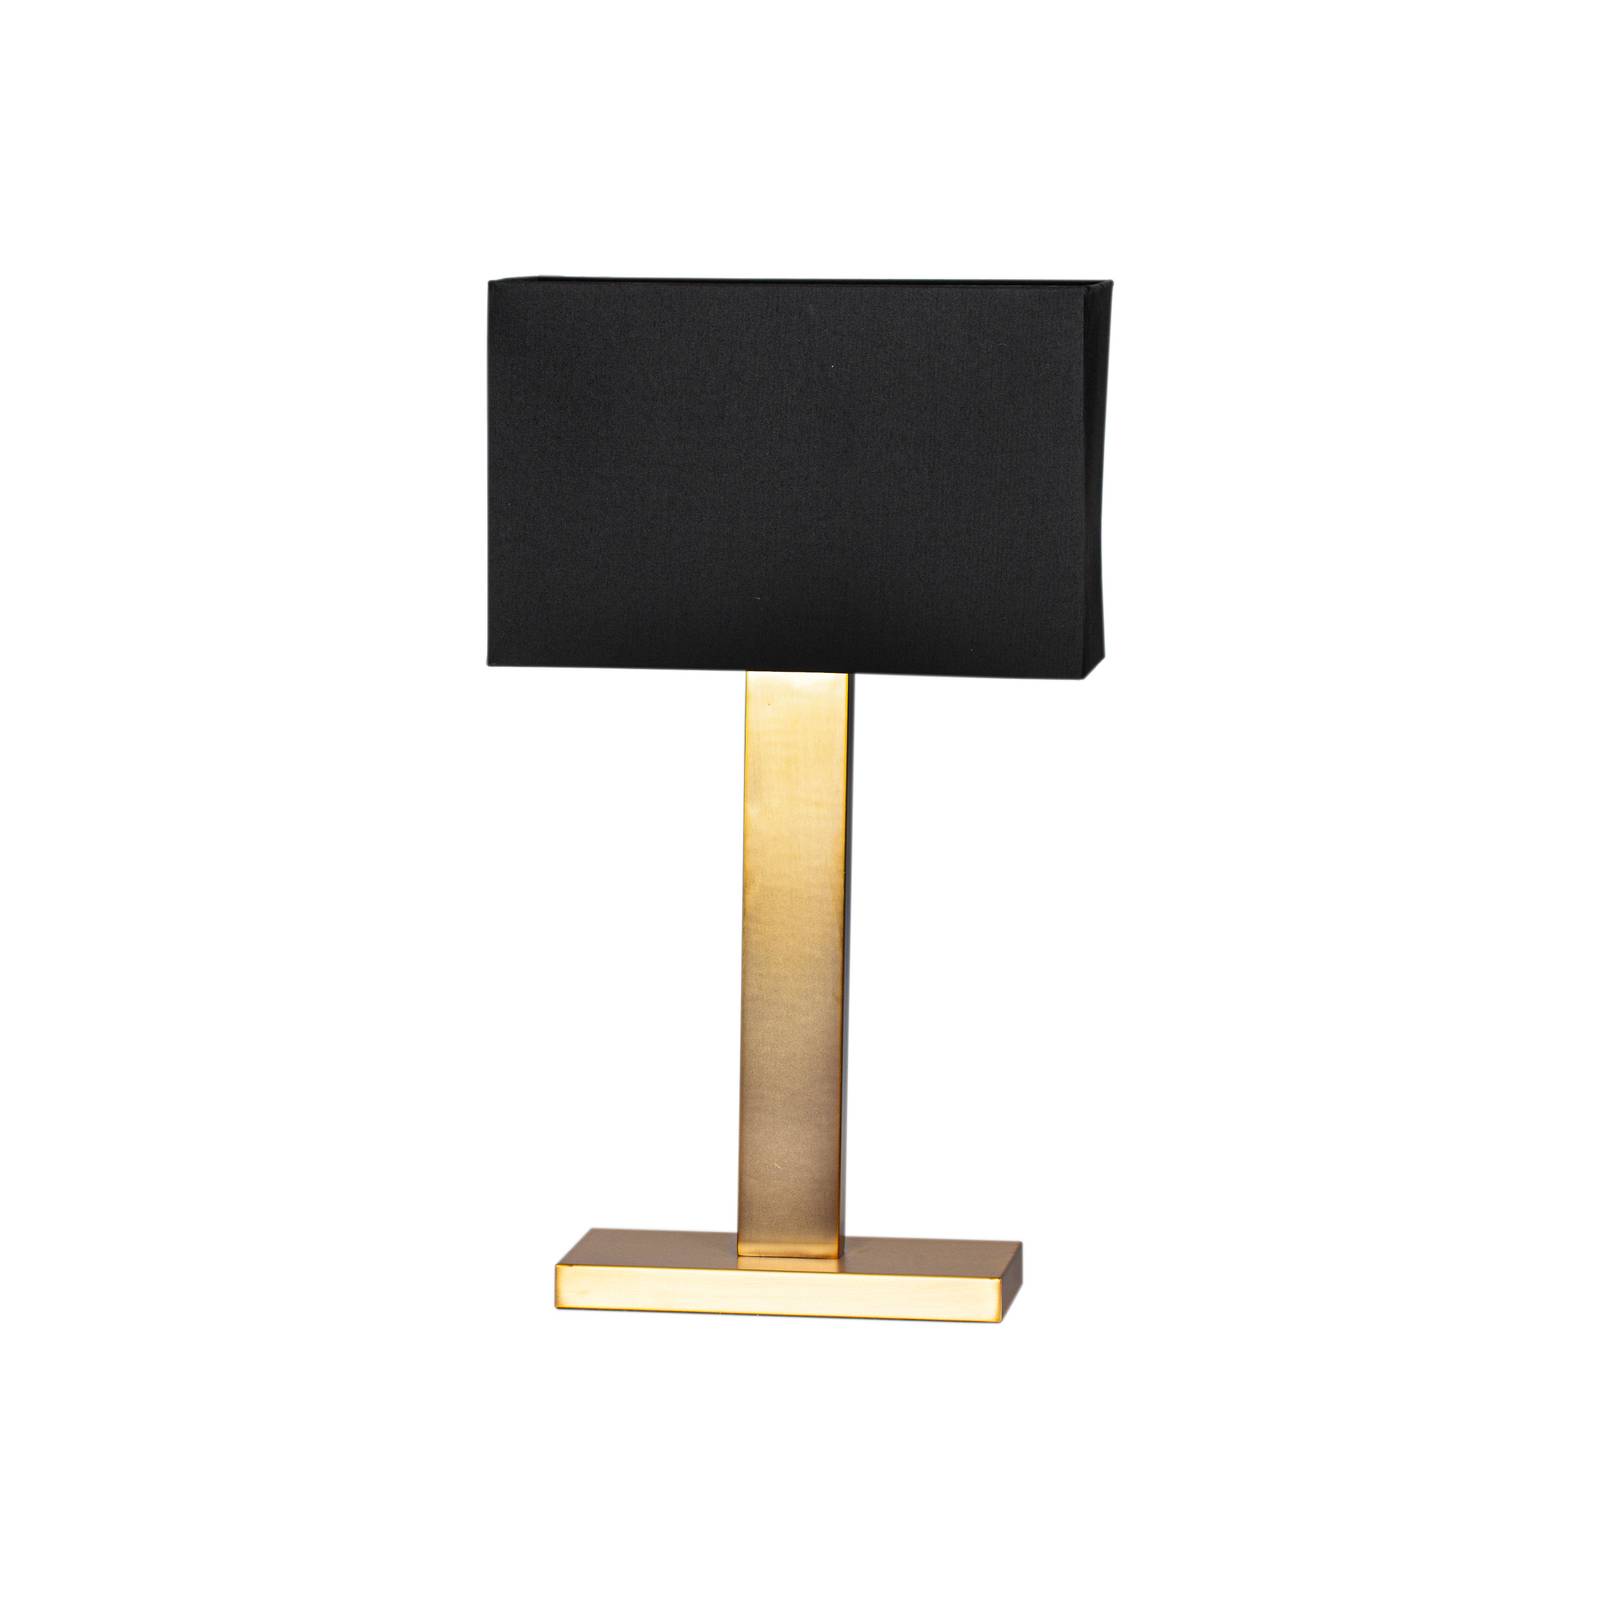 Levně By Rydéns Prime stolní lampa výška 69 cm zlatá/černá